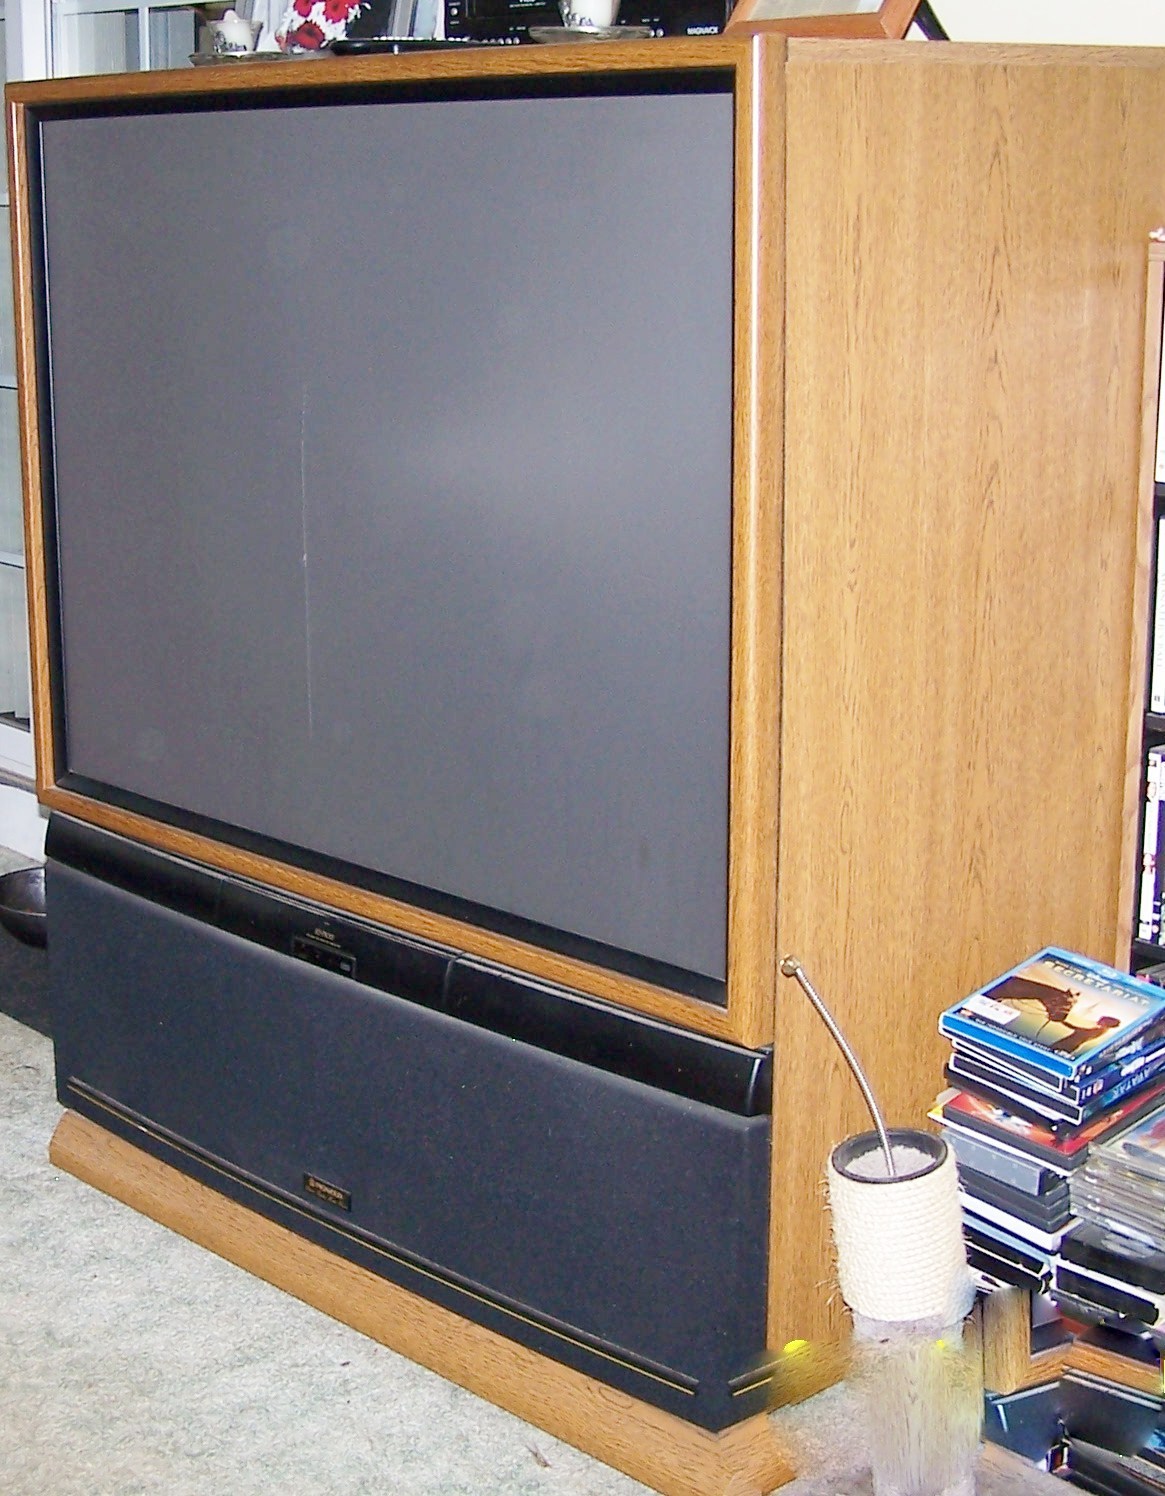 Первые плоские телевизоры. Сони проекционный телевизор 2000. Проекционный телевизор Пионер 5000. Проекционный телевизор Sony 2003 года. DLP — проекционные телевизоры.